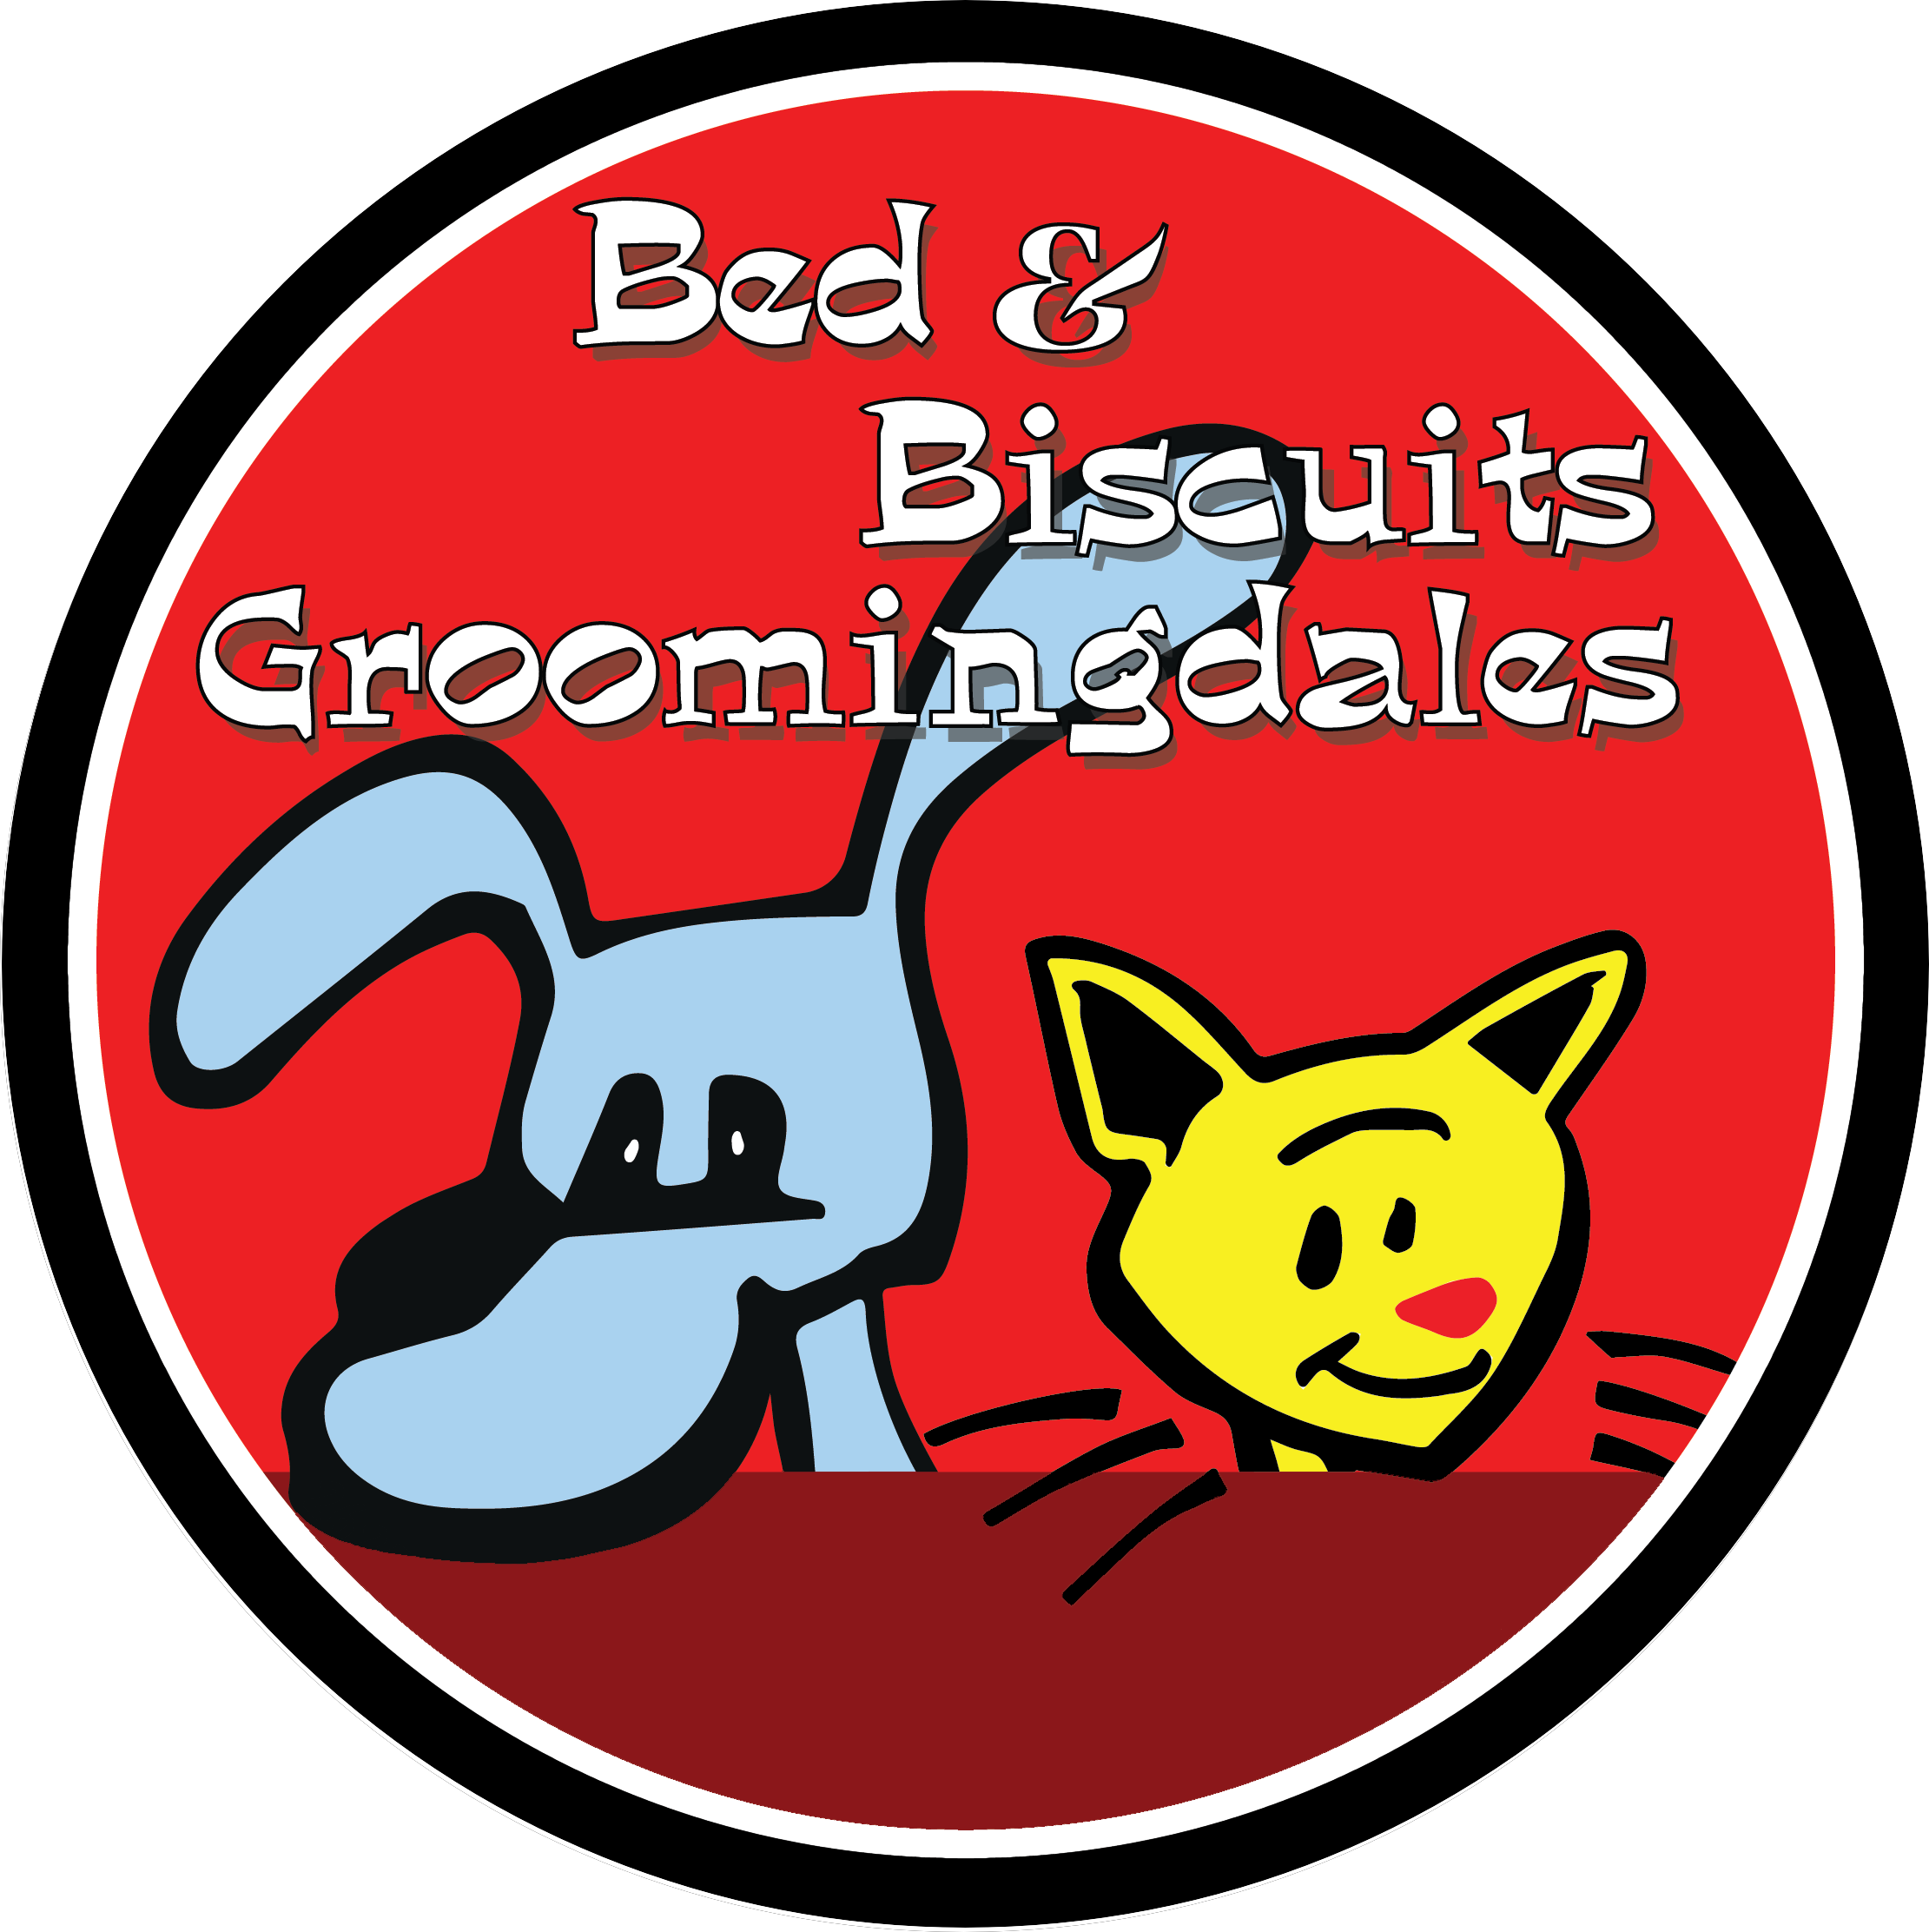 Bed &amp; Biscuits Groomingdales